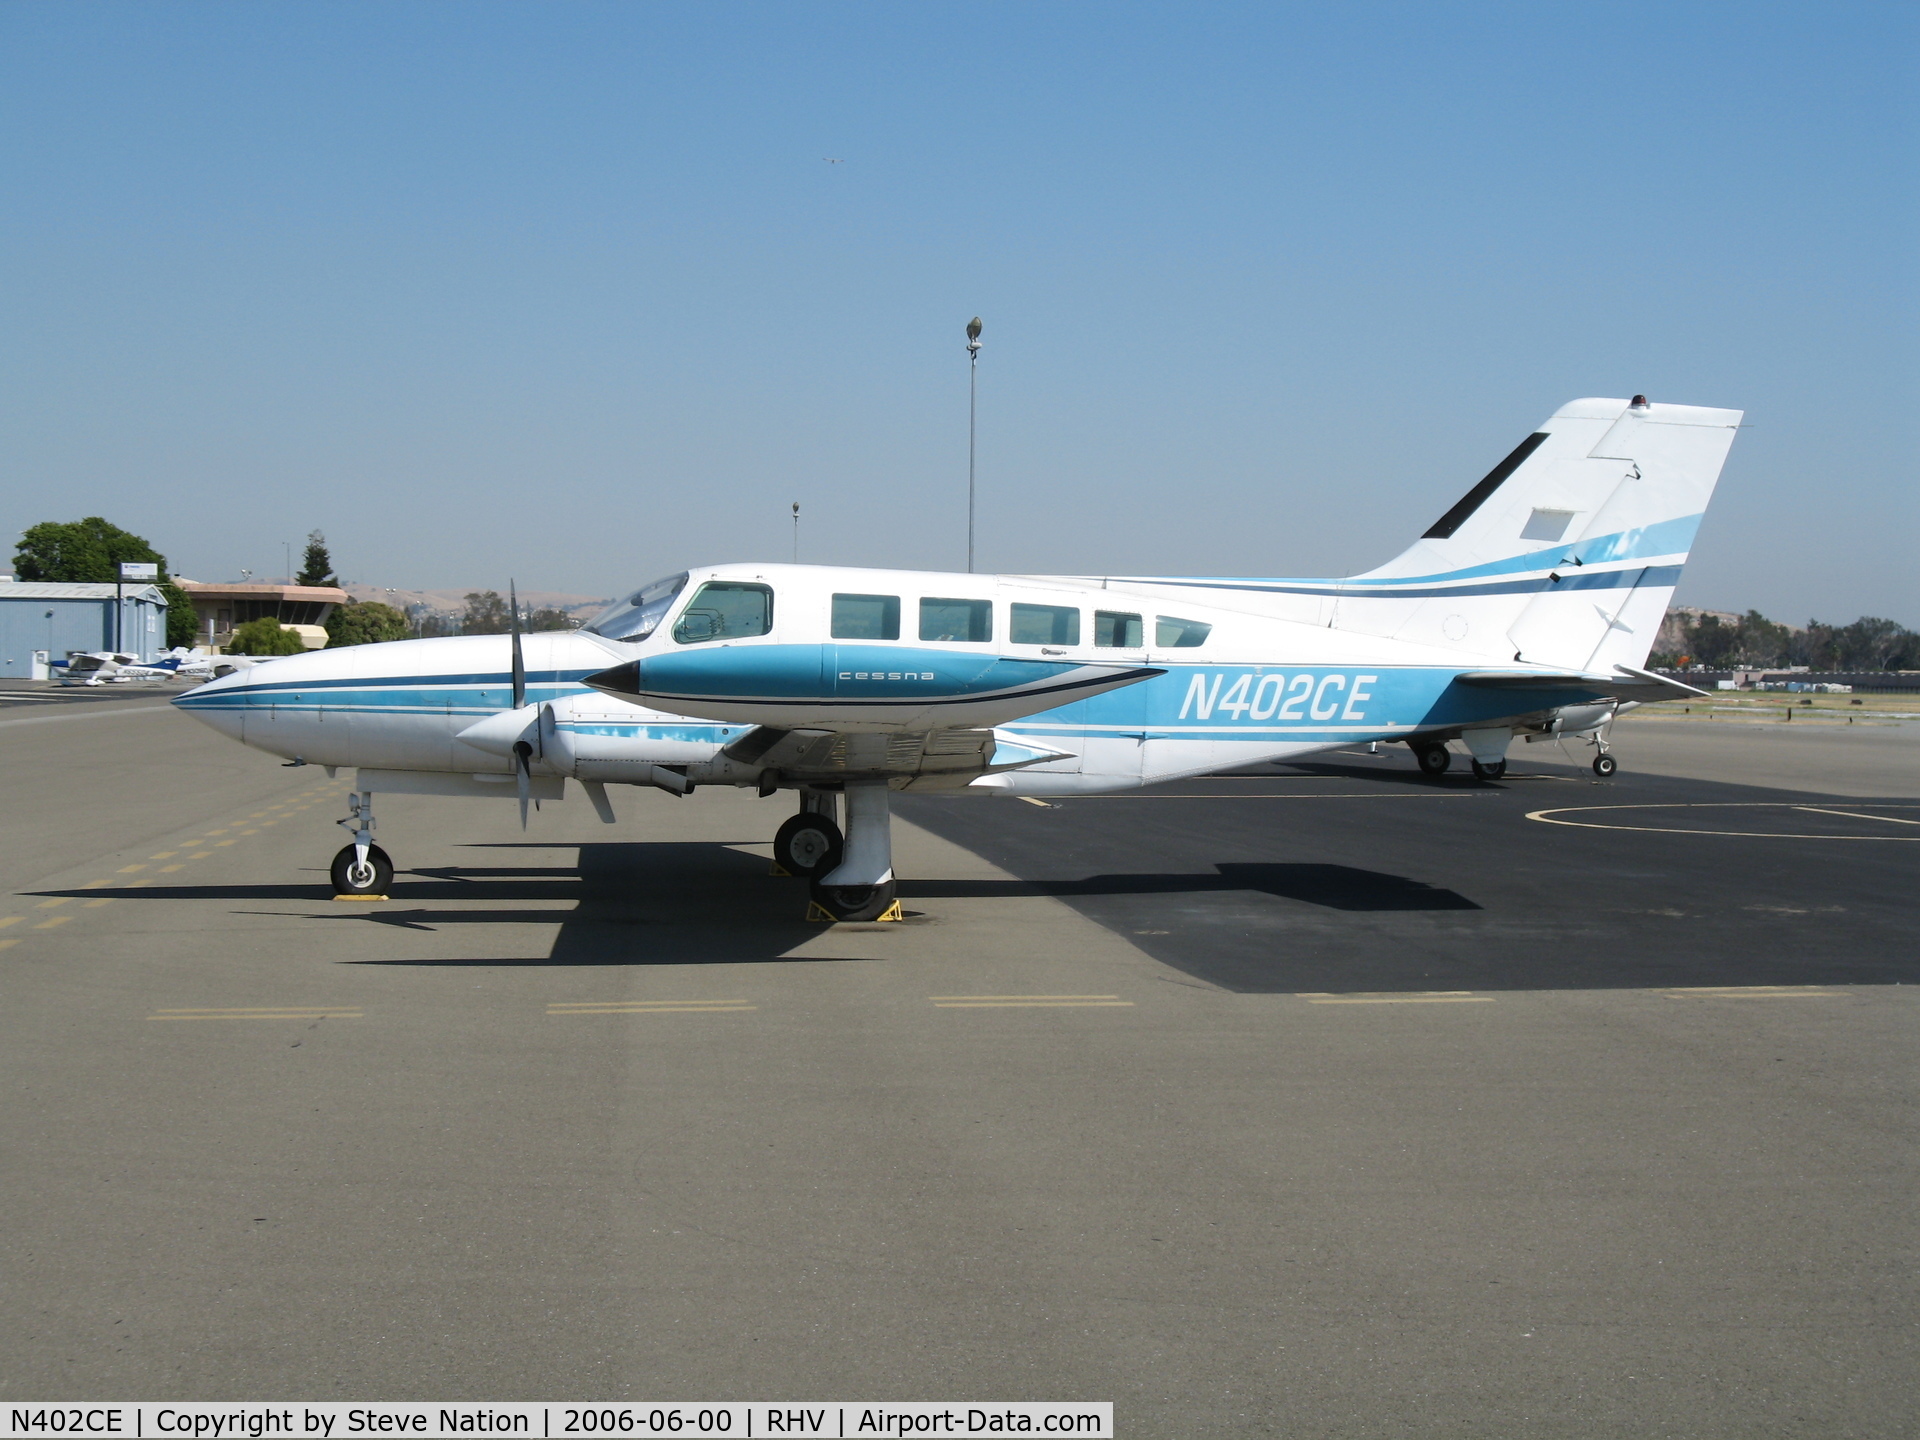 N402CE, 1973 Cessna 402B Utiliner C/N 402B0364, Cal Nice Air 1973 Cessna 402B @ Reid-Hillview Airport (San Jose), CA